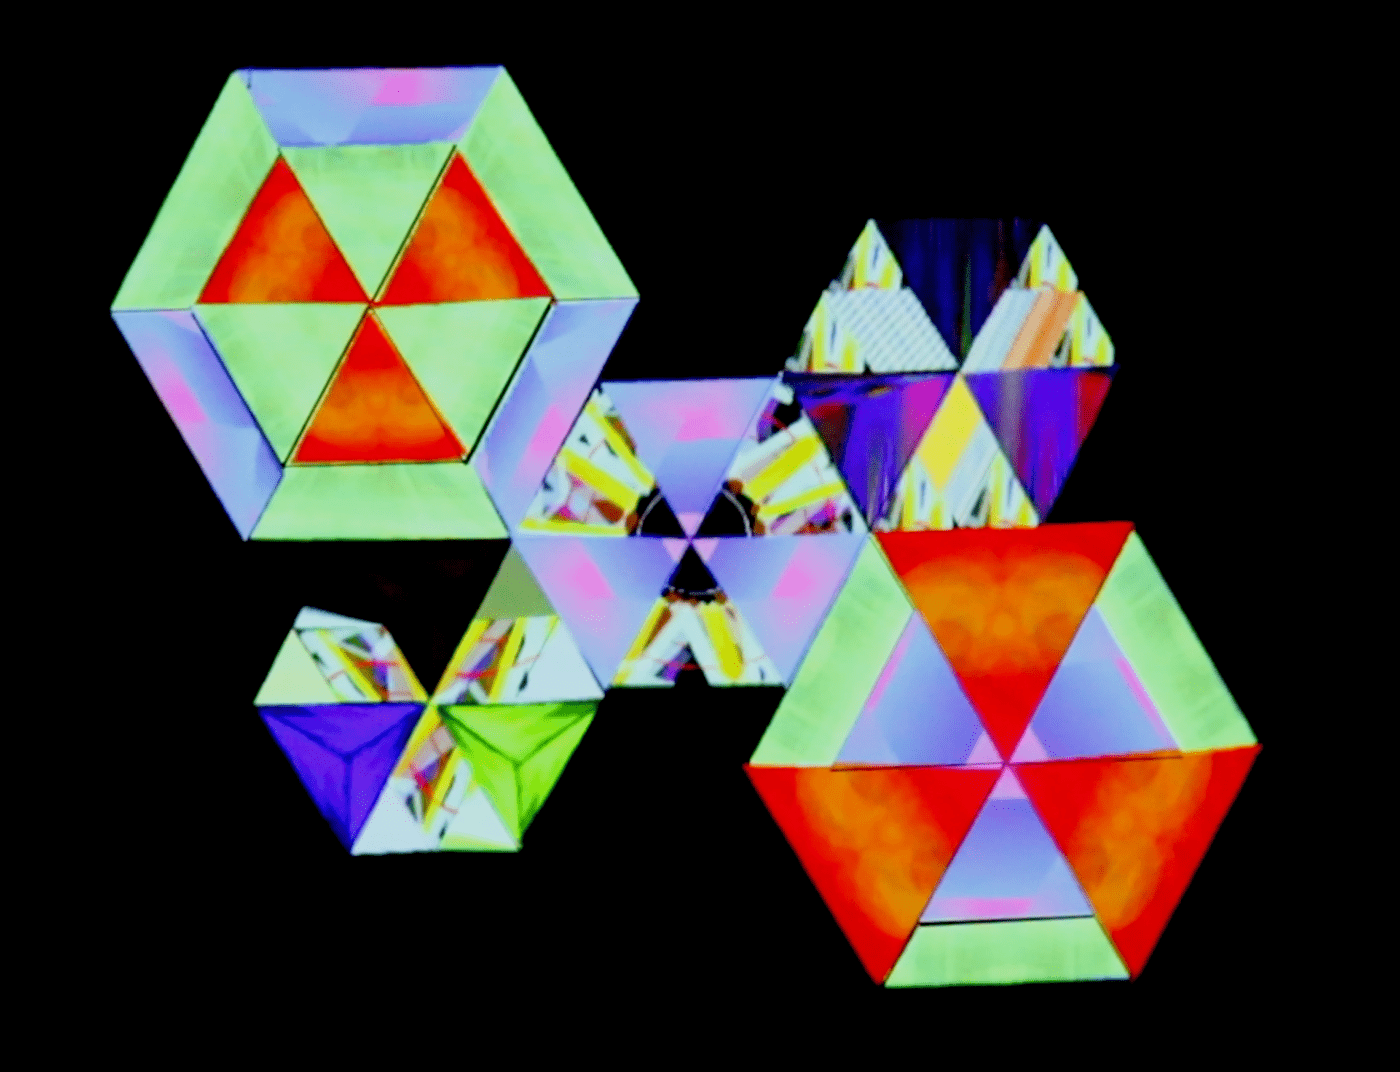 artwork contemporary art Digital Art  fine art installation Media Art new media art projection mapping